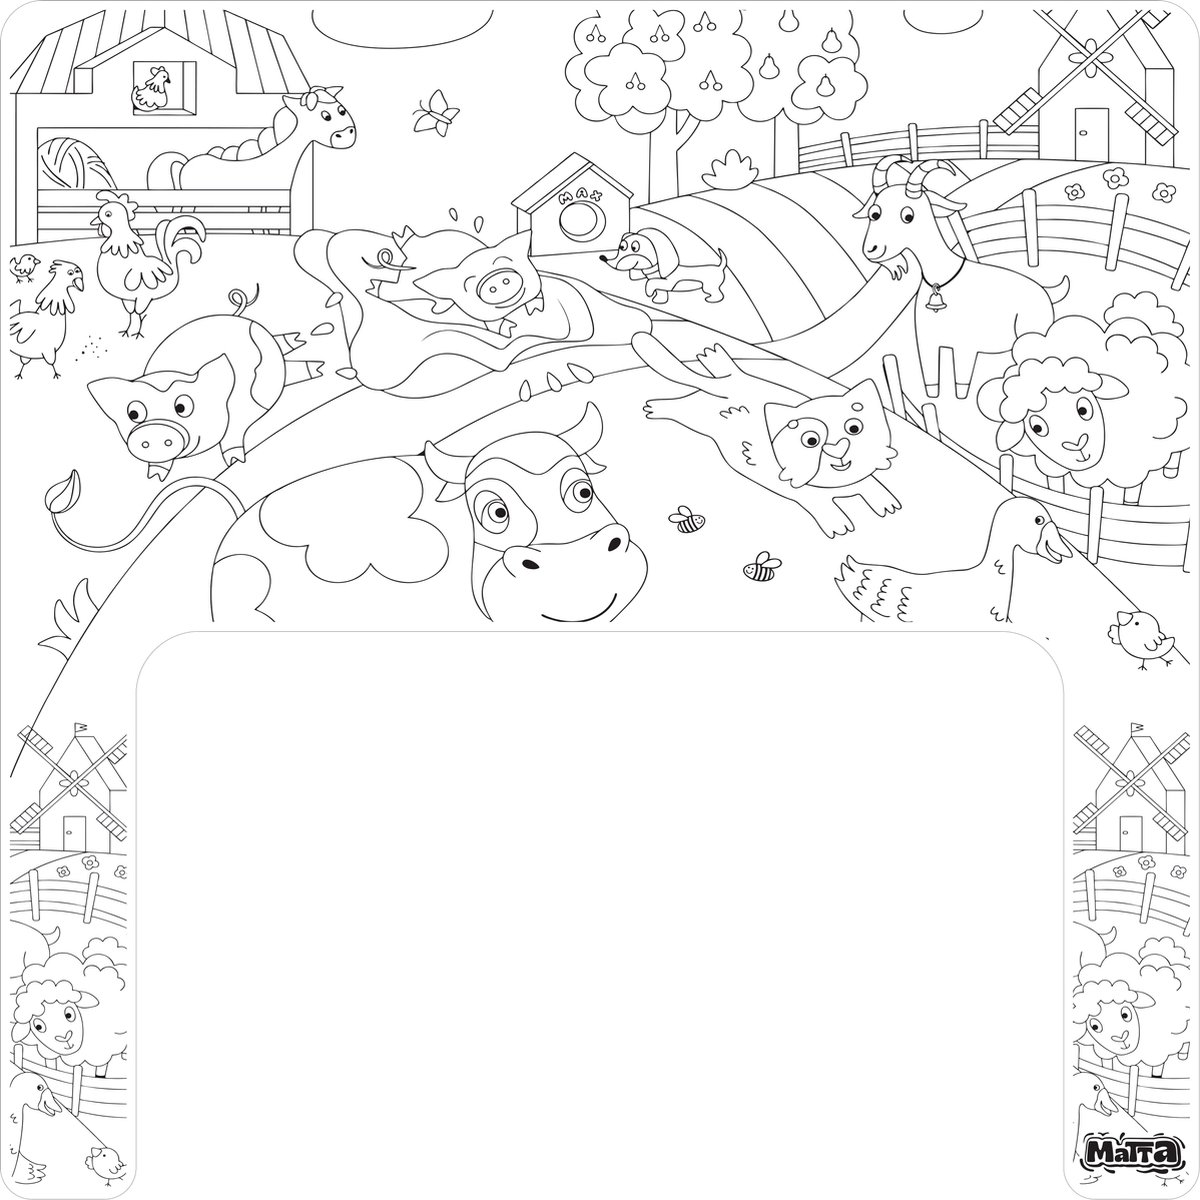 Matta Kids - Boerderij plezier - Herbruikbare Kleurplaat en Veegplacemat voor de Ikea Antilop